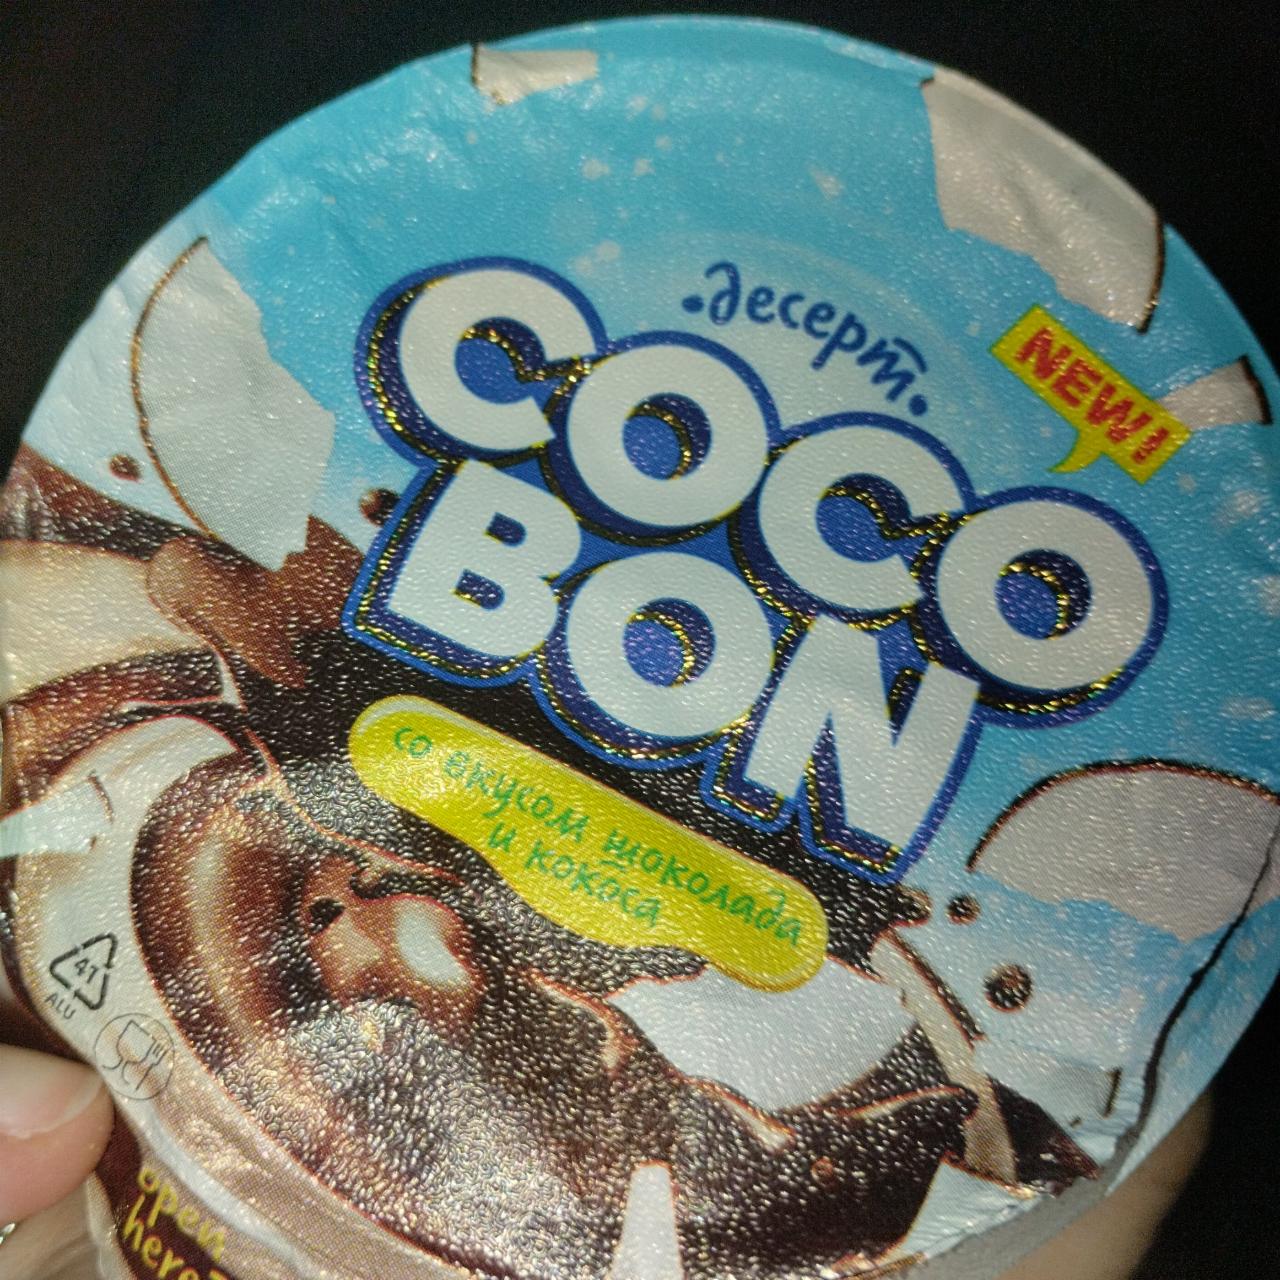 Фото - Десерт со вкусом шоколада и кокоса Coco Bon